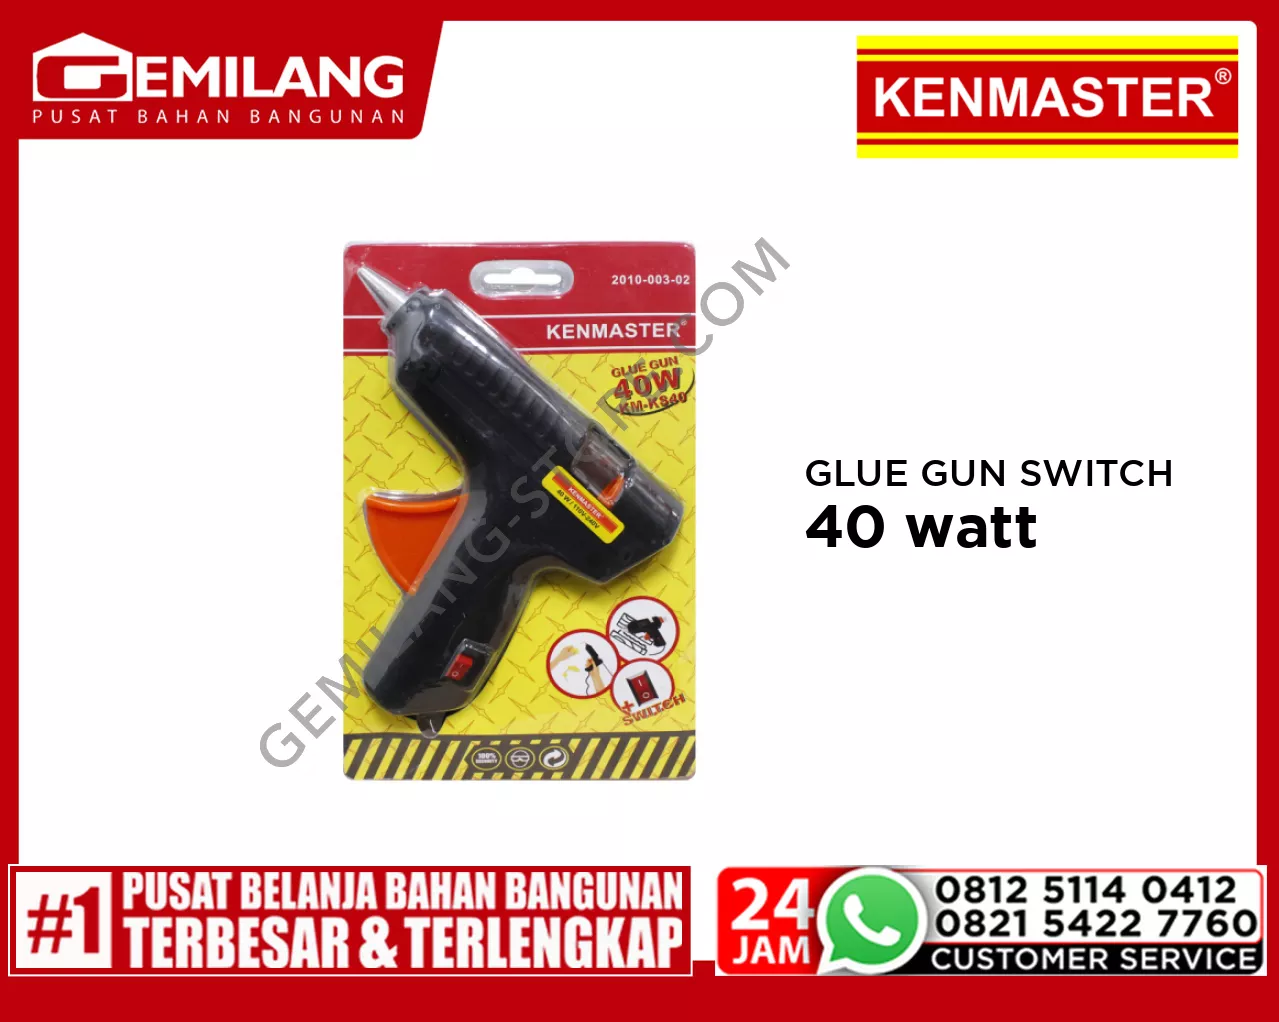 KENMASTER GLUE GUN SWITCH 40w